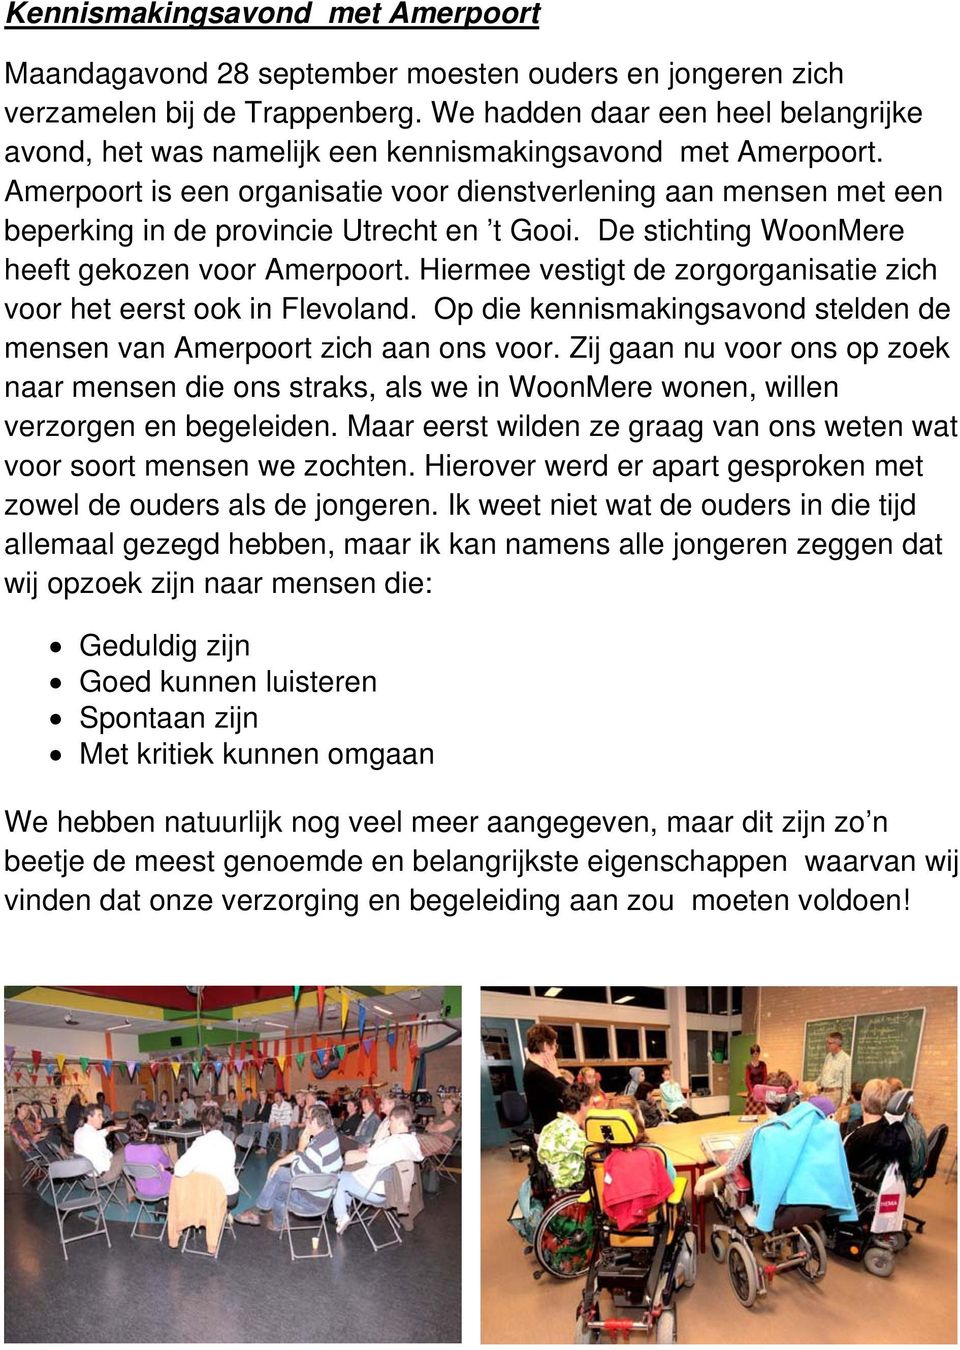 Amerpoort is een organisatie voor dienstverlening aan mensen met een beperking in de provincie Utrecht en t Gooi. De stichting WoonMere heeft gekozen voor Amerpoort.